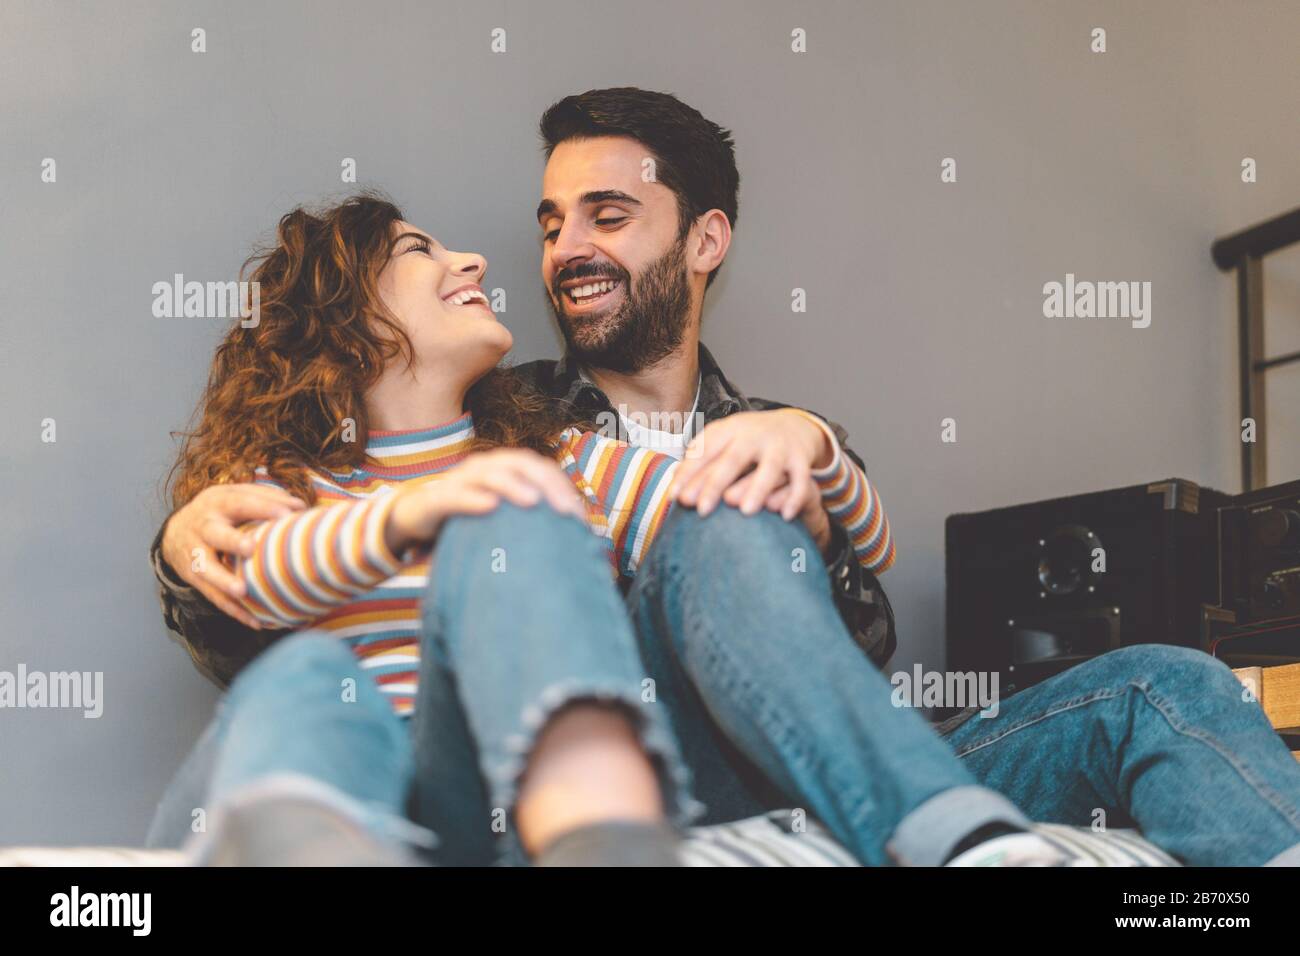 Glückliches Paar, das sich zu Hause im Wohnzimmer umarmt - Junge Liebhaber teilen zärtliche Momente zusammen - Liebesbeziehung und romantisches Anfängerkonzept Stockfoto